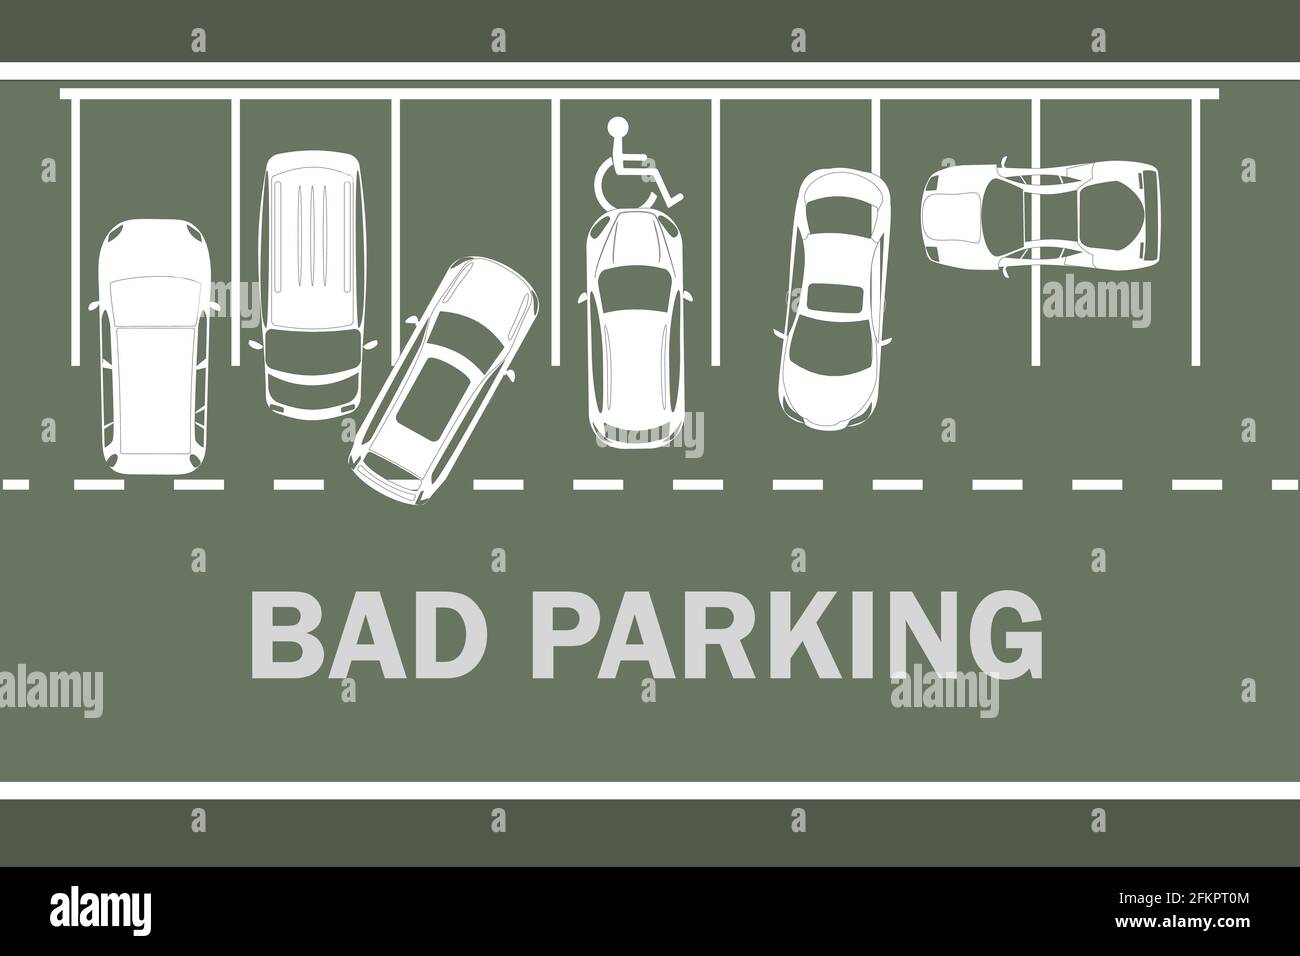 Parkplatz mit schlecht geparkten Autos. Infografik zu richtigen und falschen Parkplatzbeispielen. Weiße Silhouetten Autos Draufsicht. Regeln der Straße.Vektor-Illustration Stock Vektor